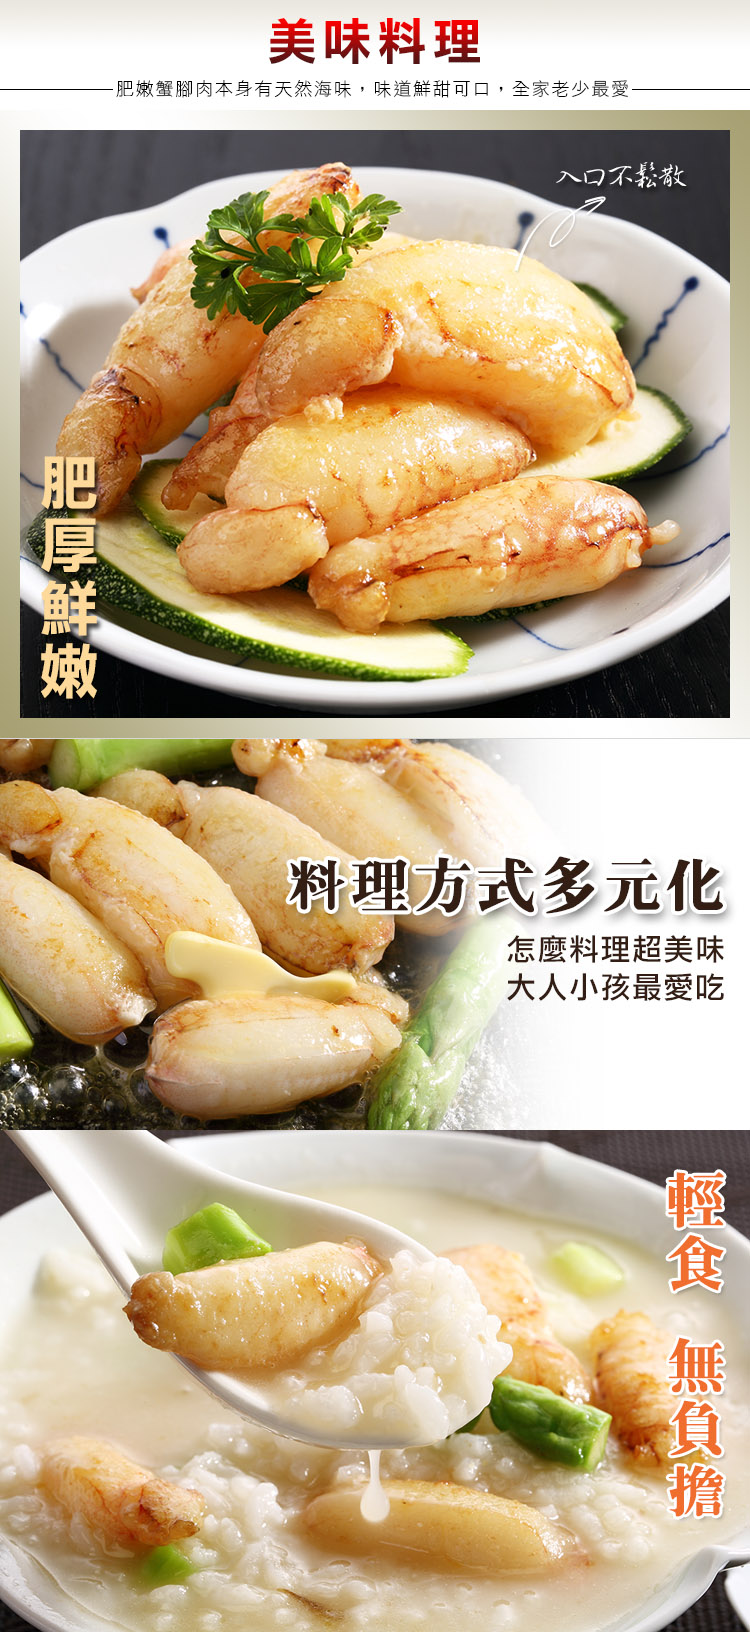 海鮮王 特選鮮甜蟹管肉 *10包組(150g±10%/包)